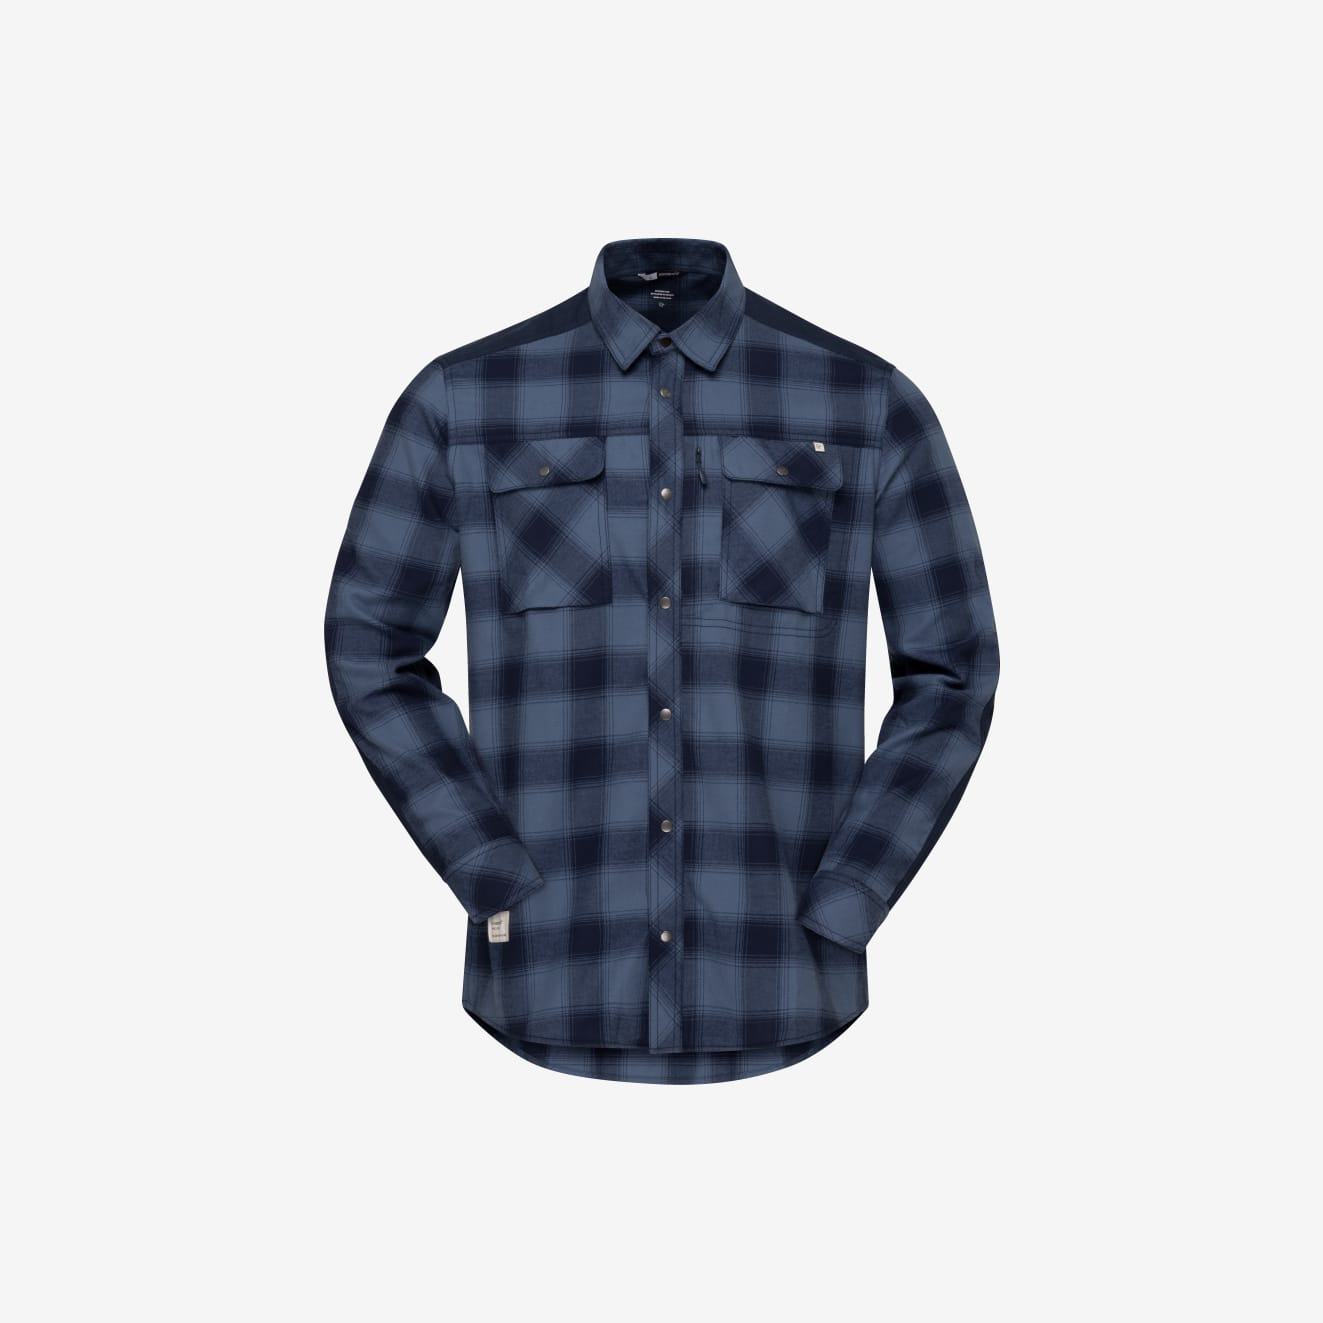 femund flannel shirt, period